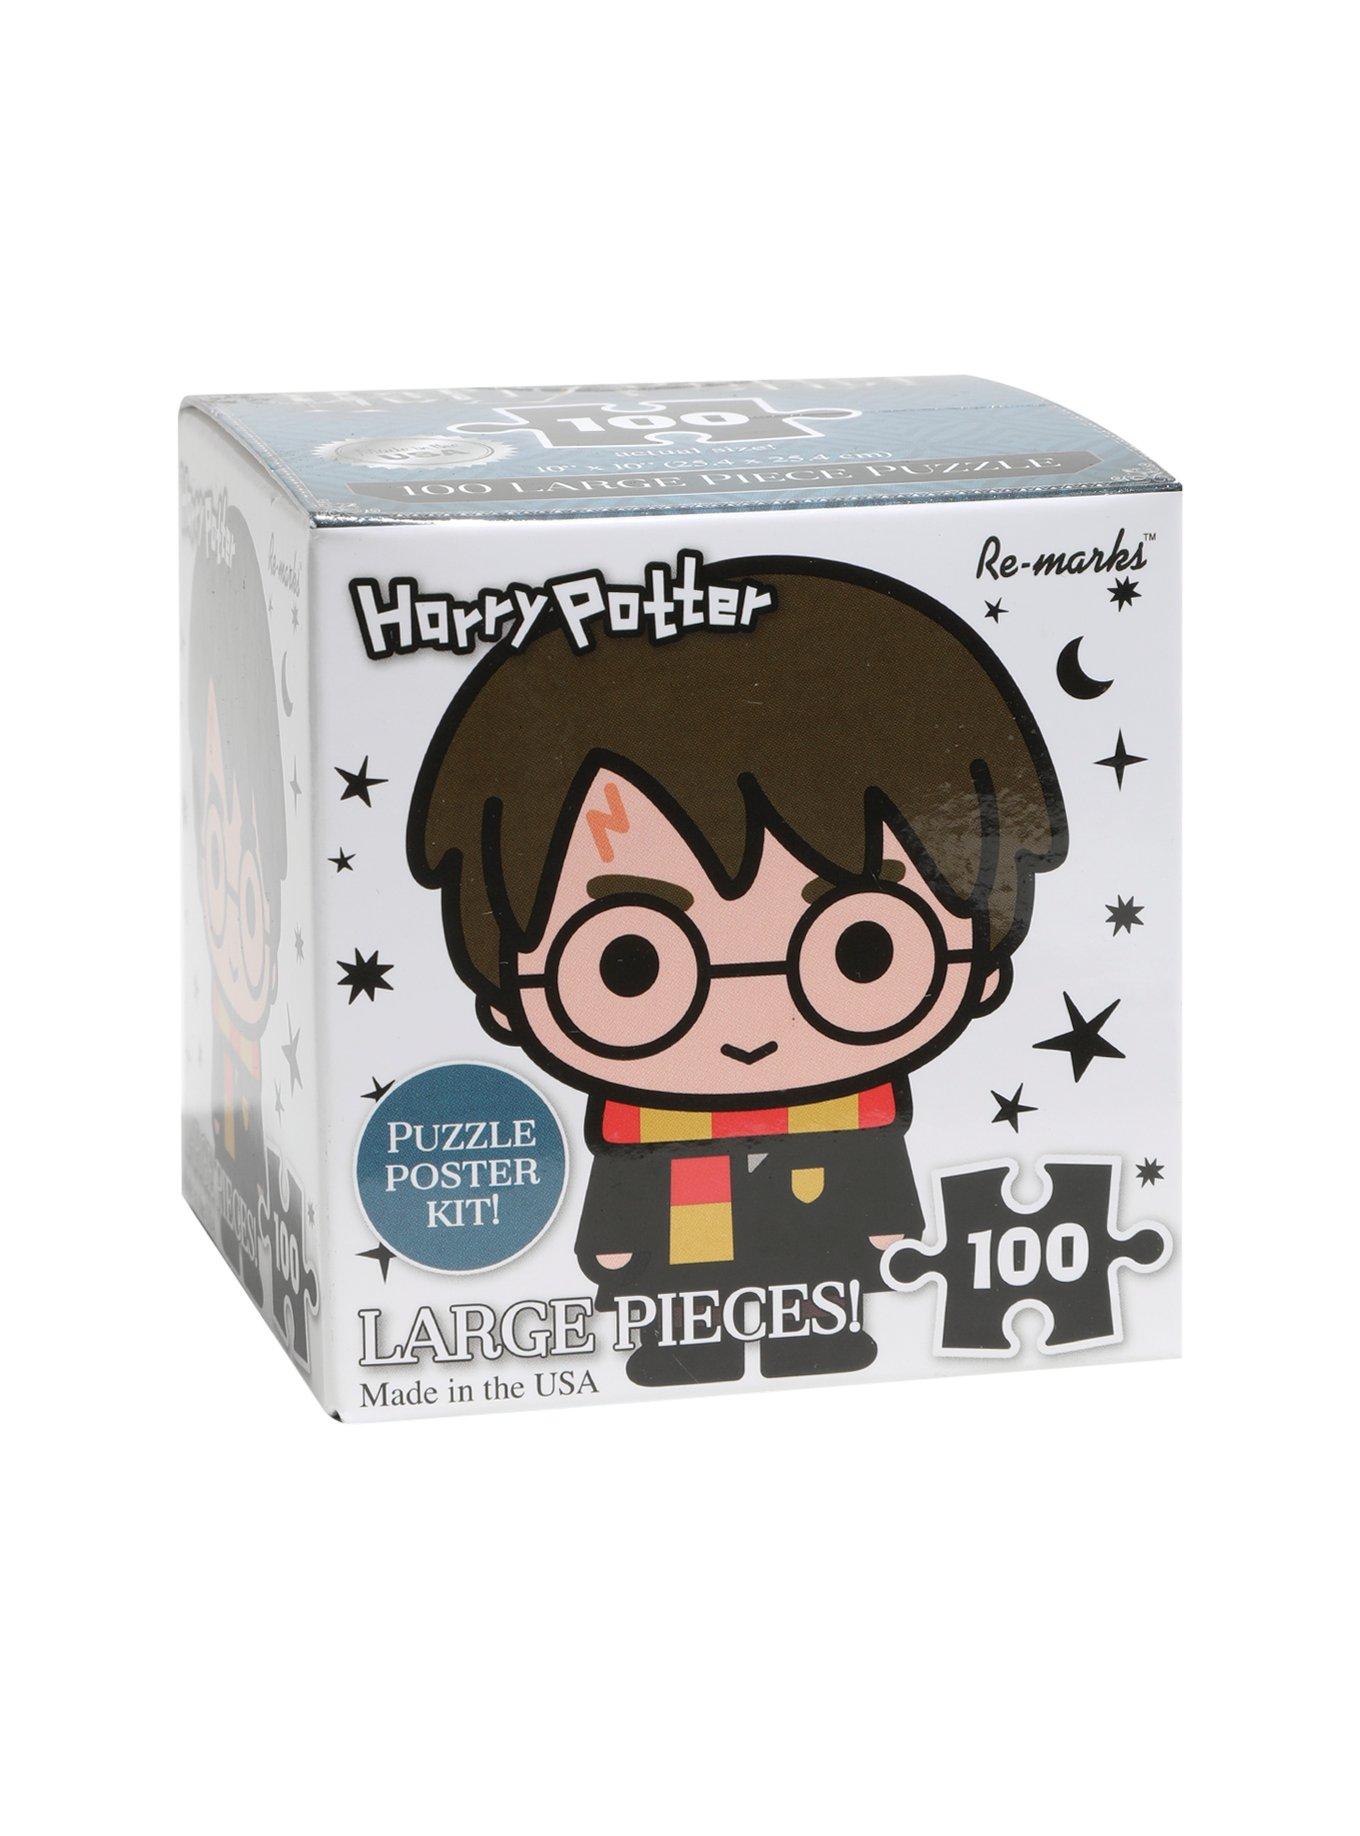 Harry Potter Chibi Harry Potter Plush, Hot Topic